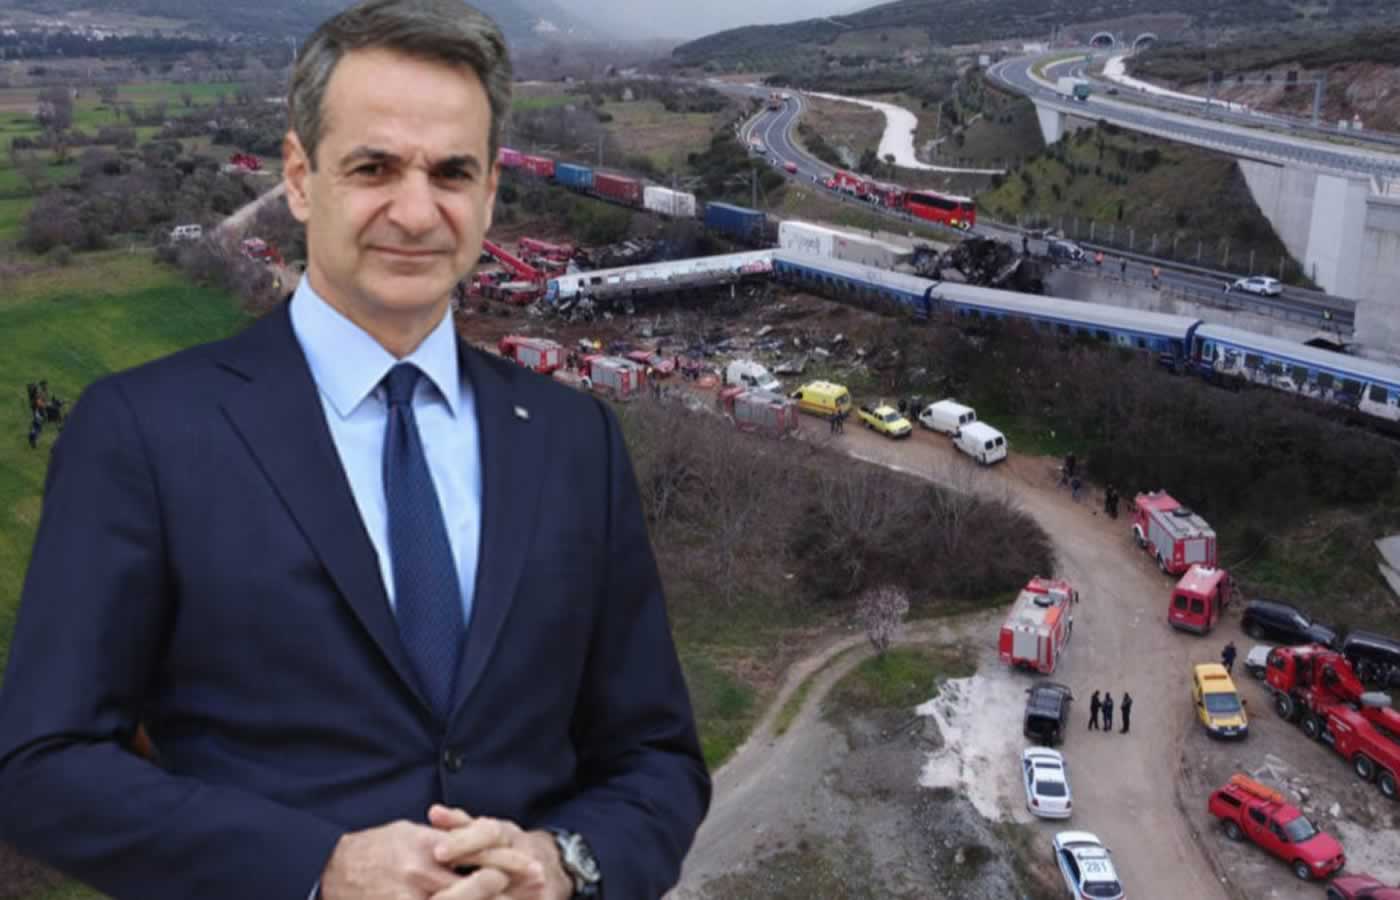 Απίστευτη καταγγελία για εγκαίνια ΜΟΥΦΑ του Μητσοτάκη στο Κέντρο τηλεδιοίκησης – σηματοδότησης του σιδηροδρομικού δικτύου βορείου Ελλάδος!